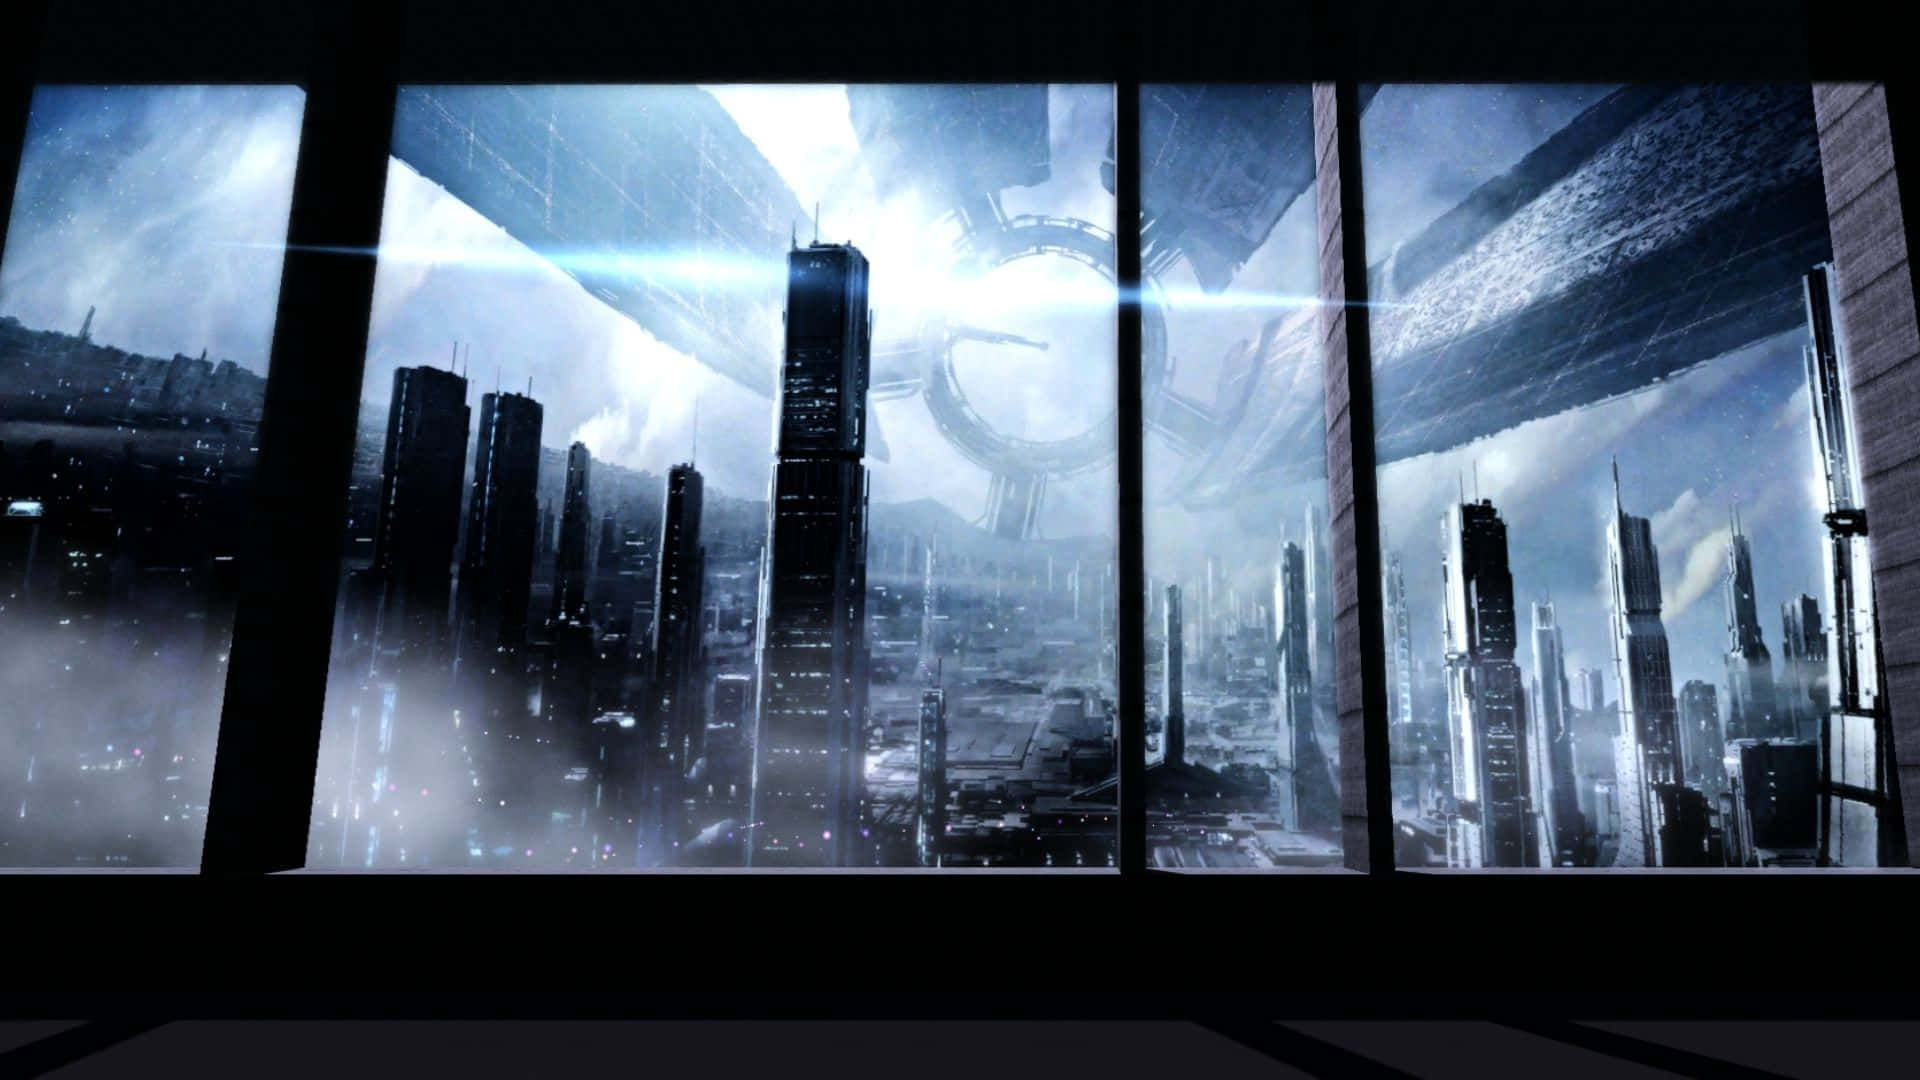 Lamajestuosa Ciudadela De Mass Effect Se Eleva Por Encima De Un Horizonte De Una Ciudad Futurista. Fondo de pantalla